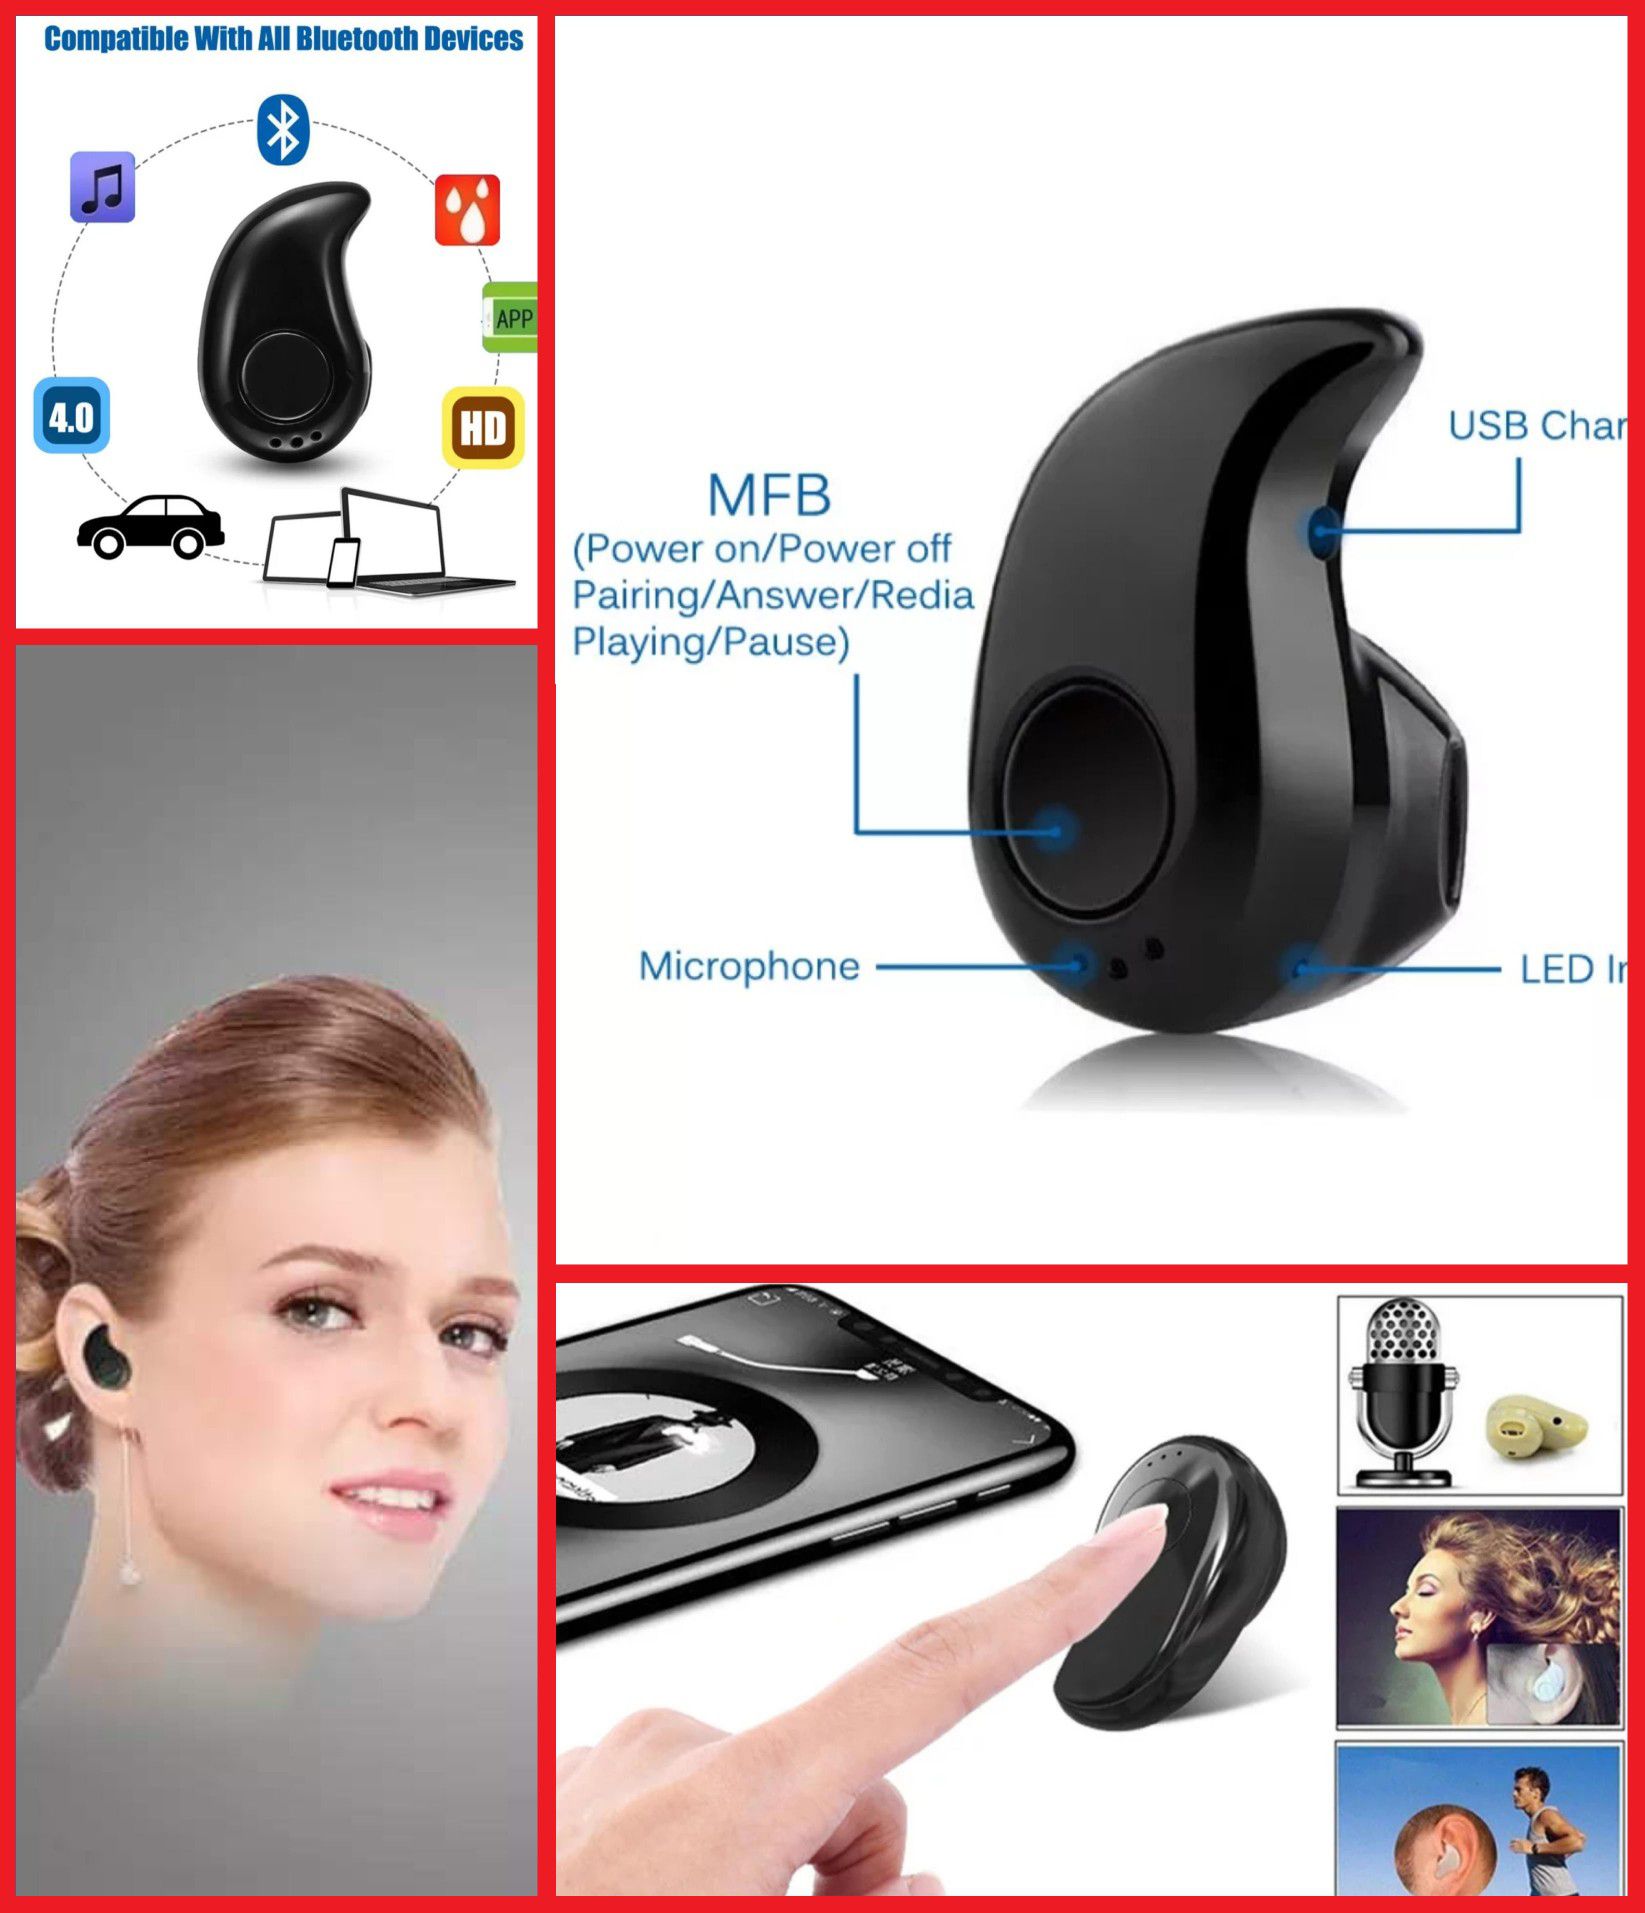 Earbud wireless Bluetooth (one ear piece)